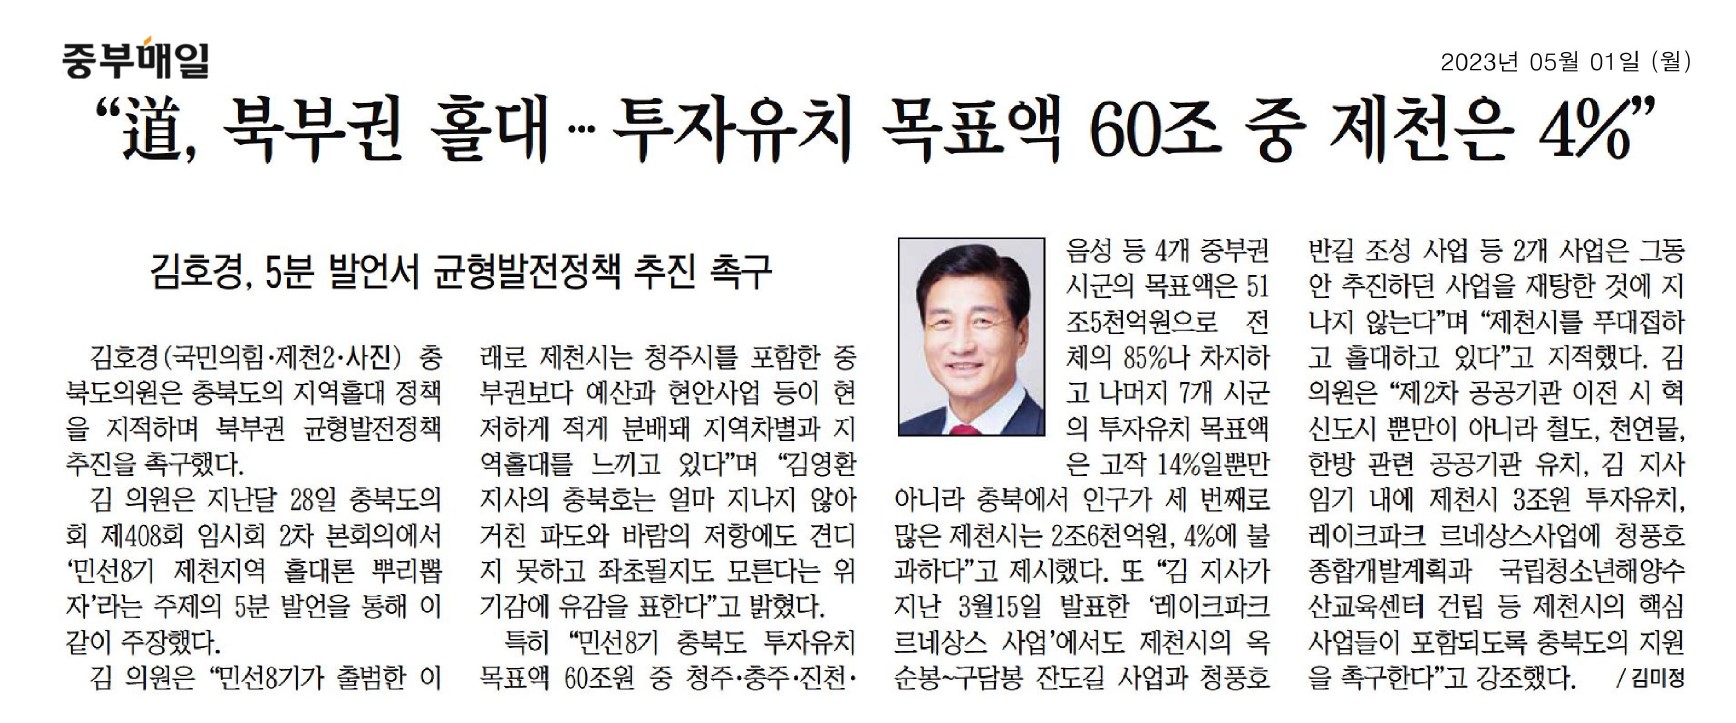 김호경 의원 충청북도 균형발전 정책 추진 촉구 - 2